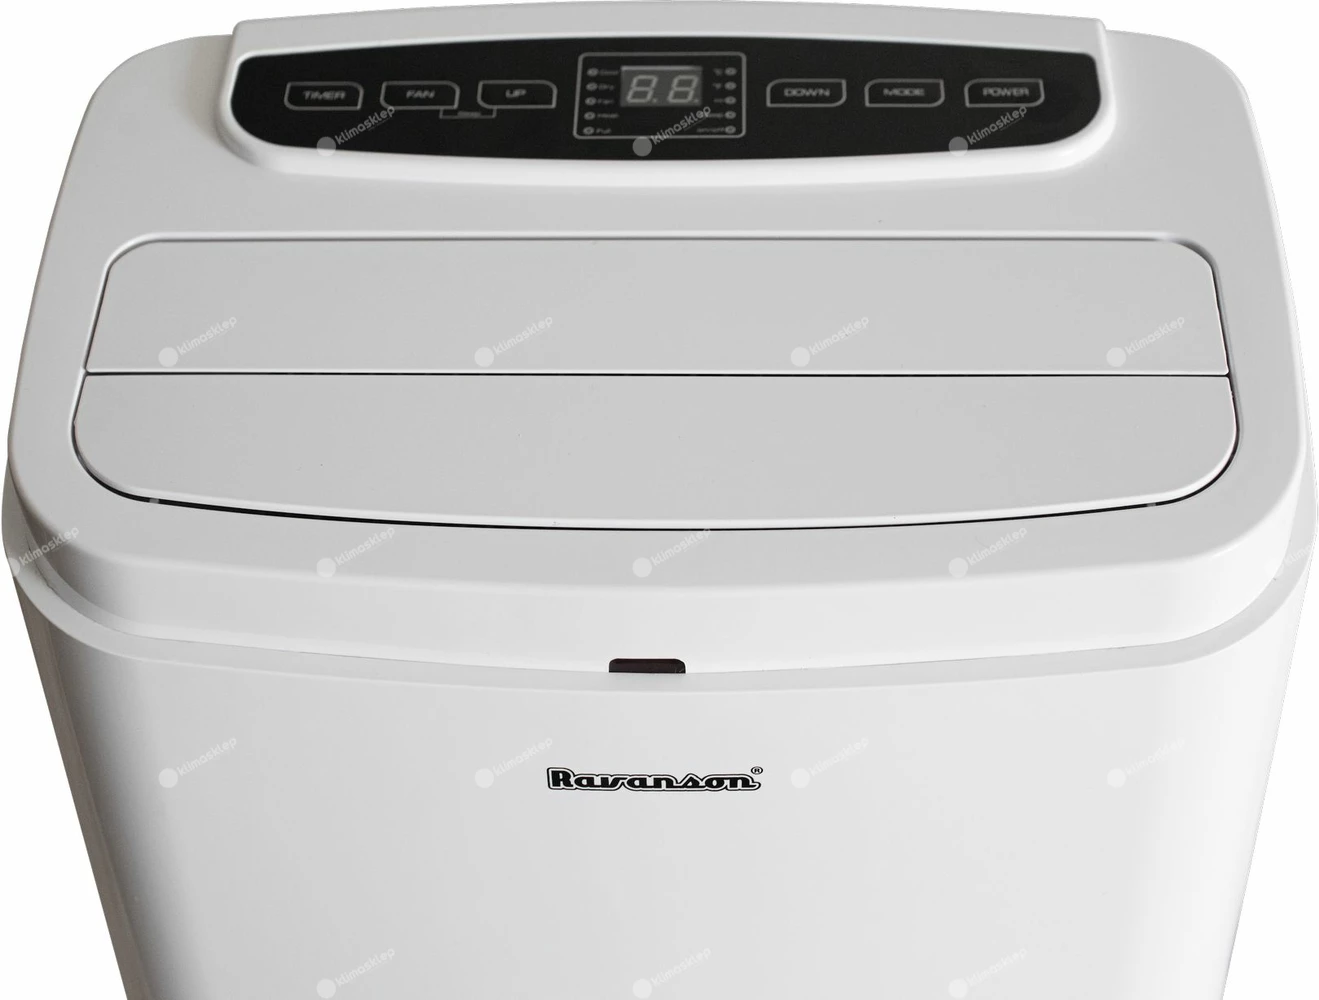 Klimatyzator przenośny Ravanson PM-9000 - panel sterowania